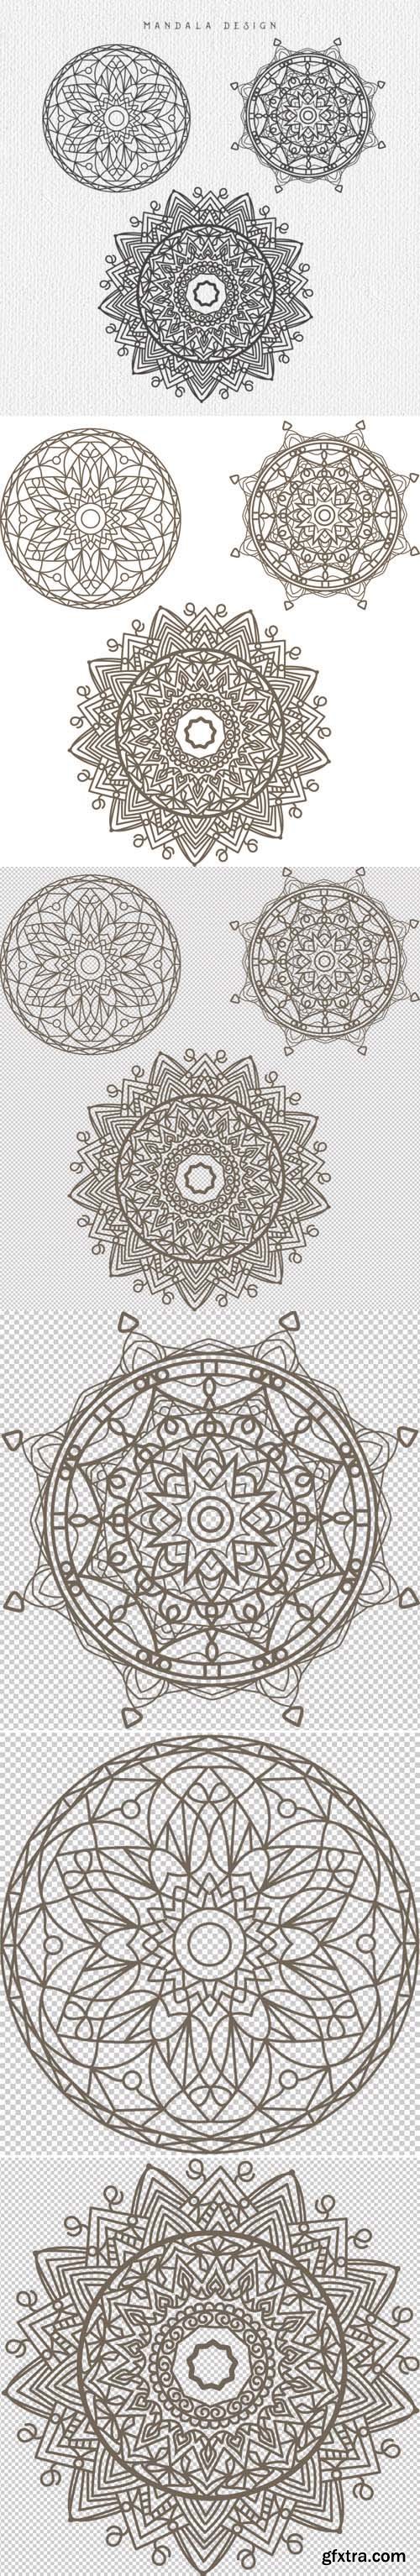 3 Mandala Designs in Vector